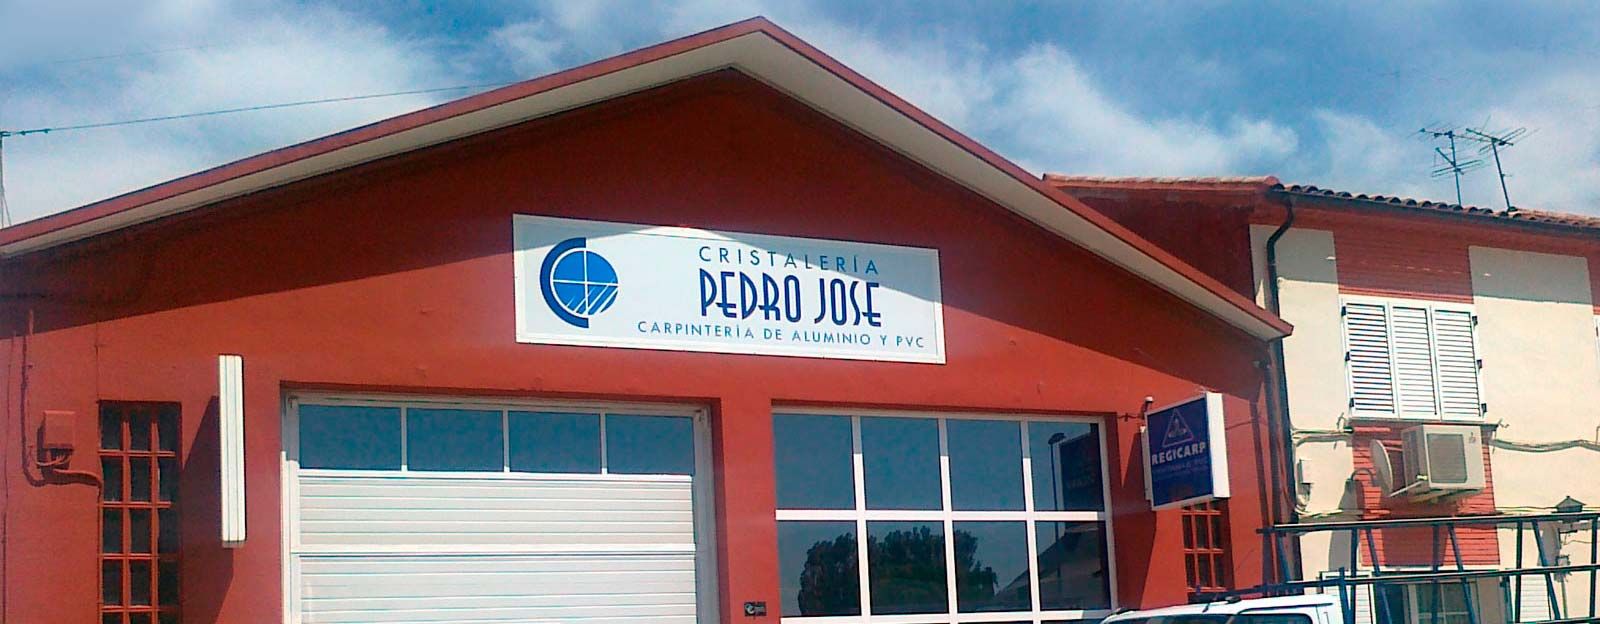 Cristalería Pedro José, S.C. fachada de carpintería